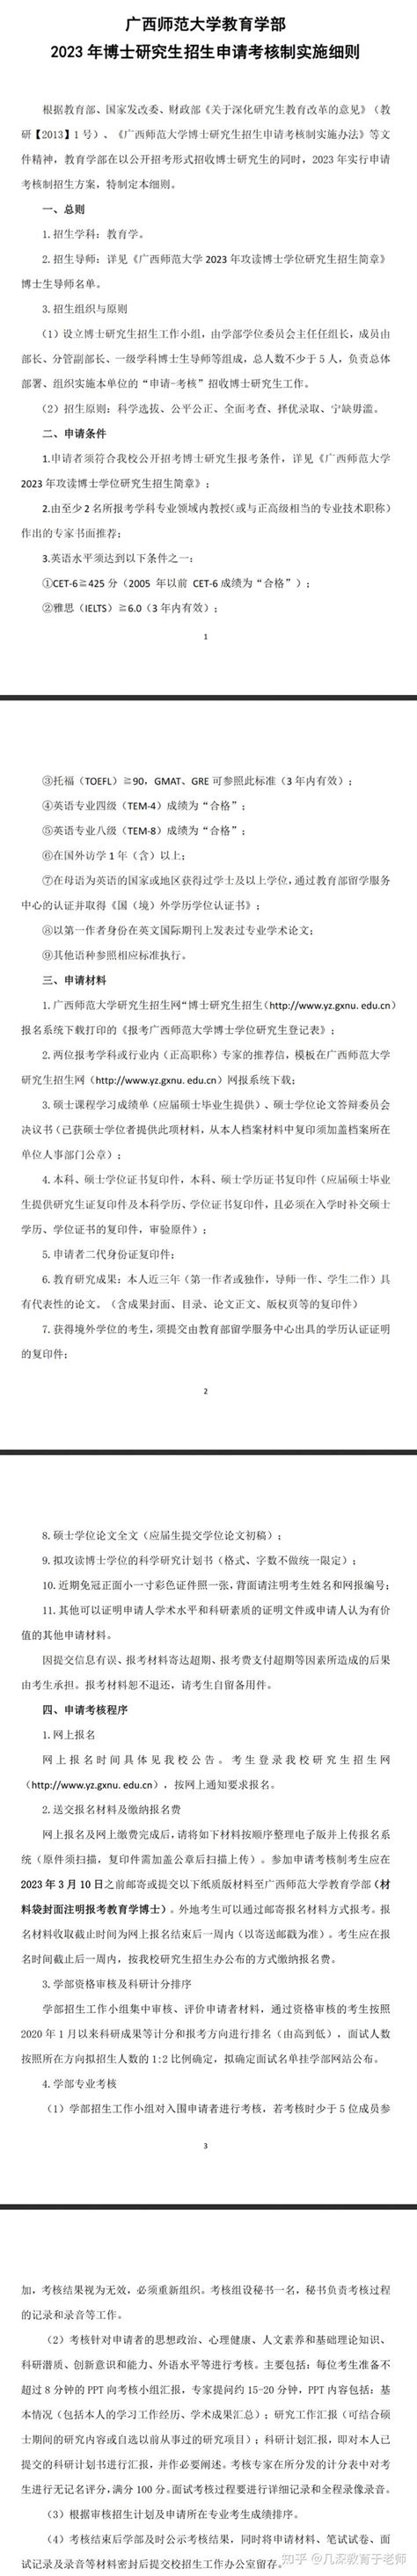 广西师范大学教育学部2023年博士研究生招生申请考核制实施细则 - 知乎